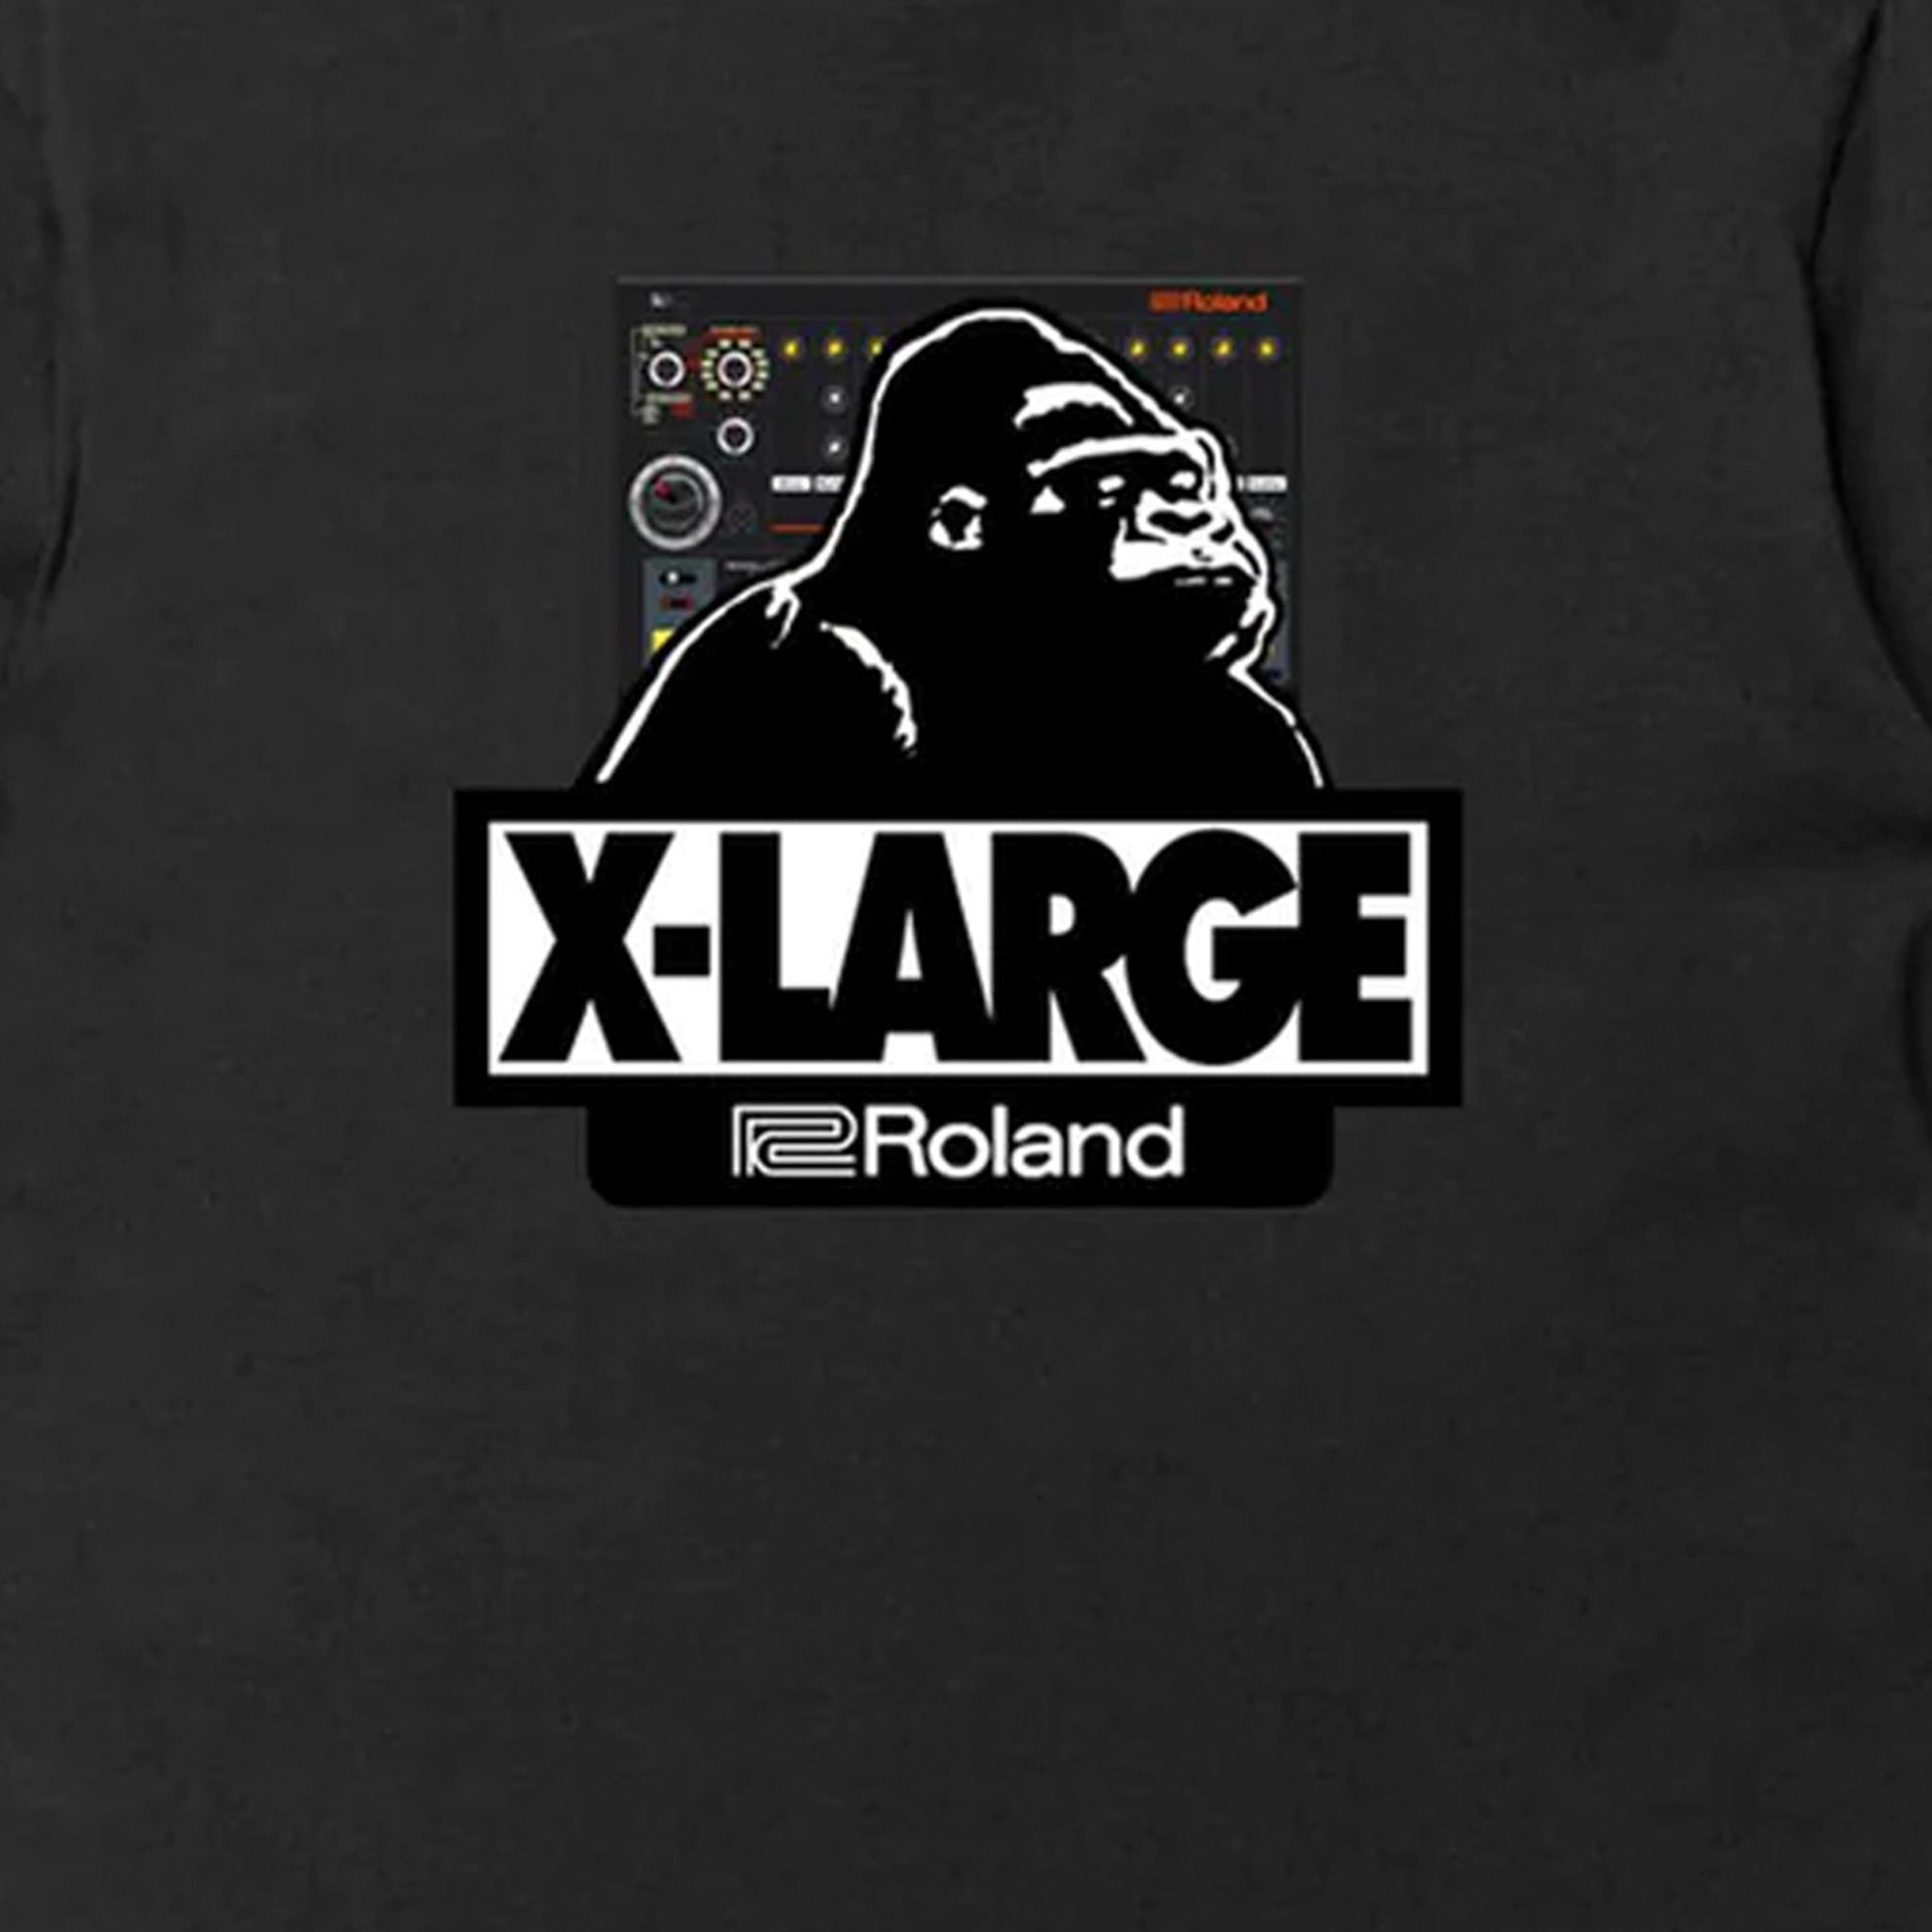 Roland Lifestyle XLARGE Roland T-Shirt (Black)